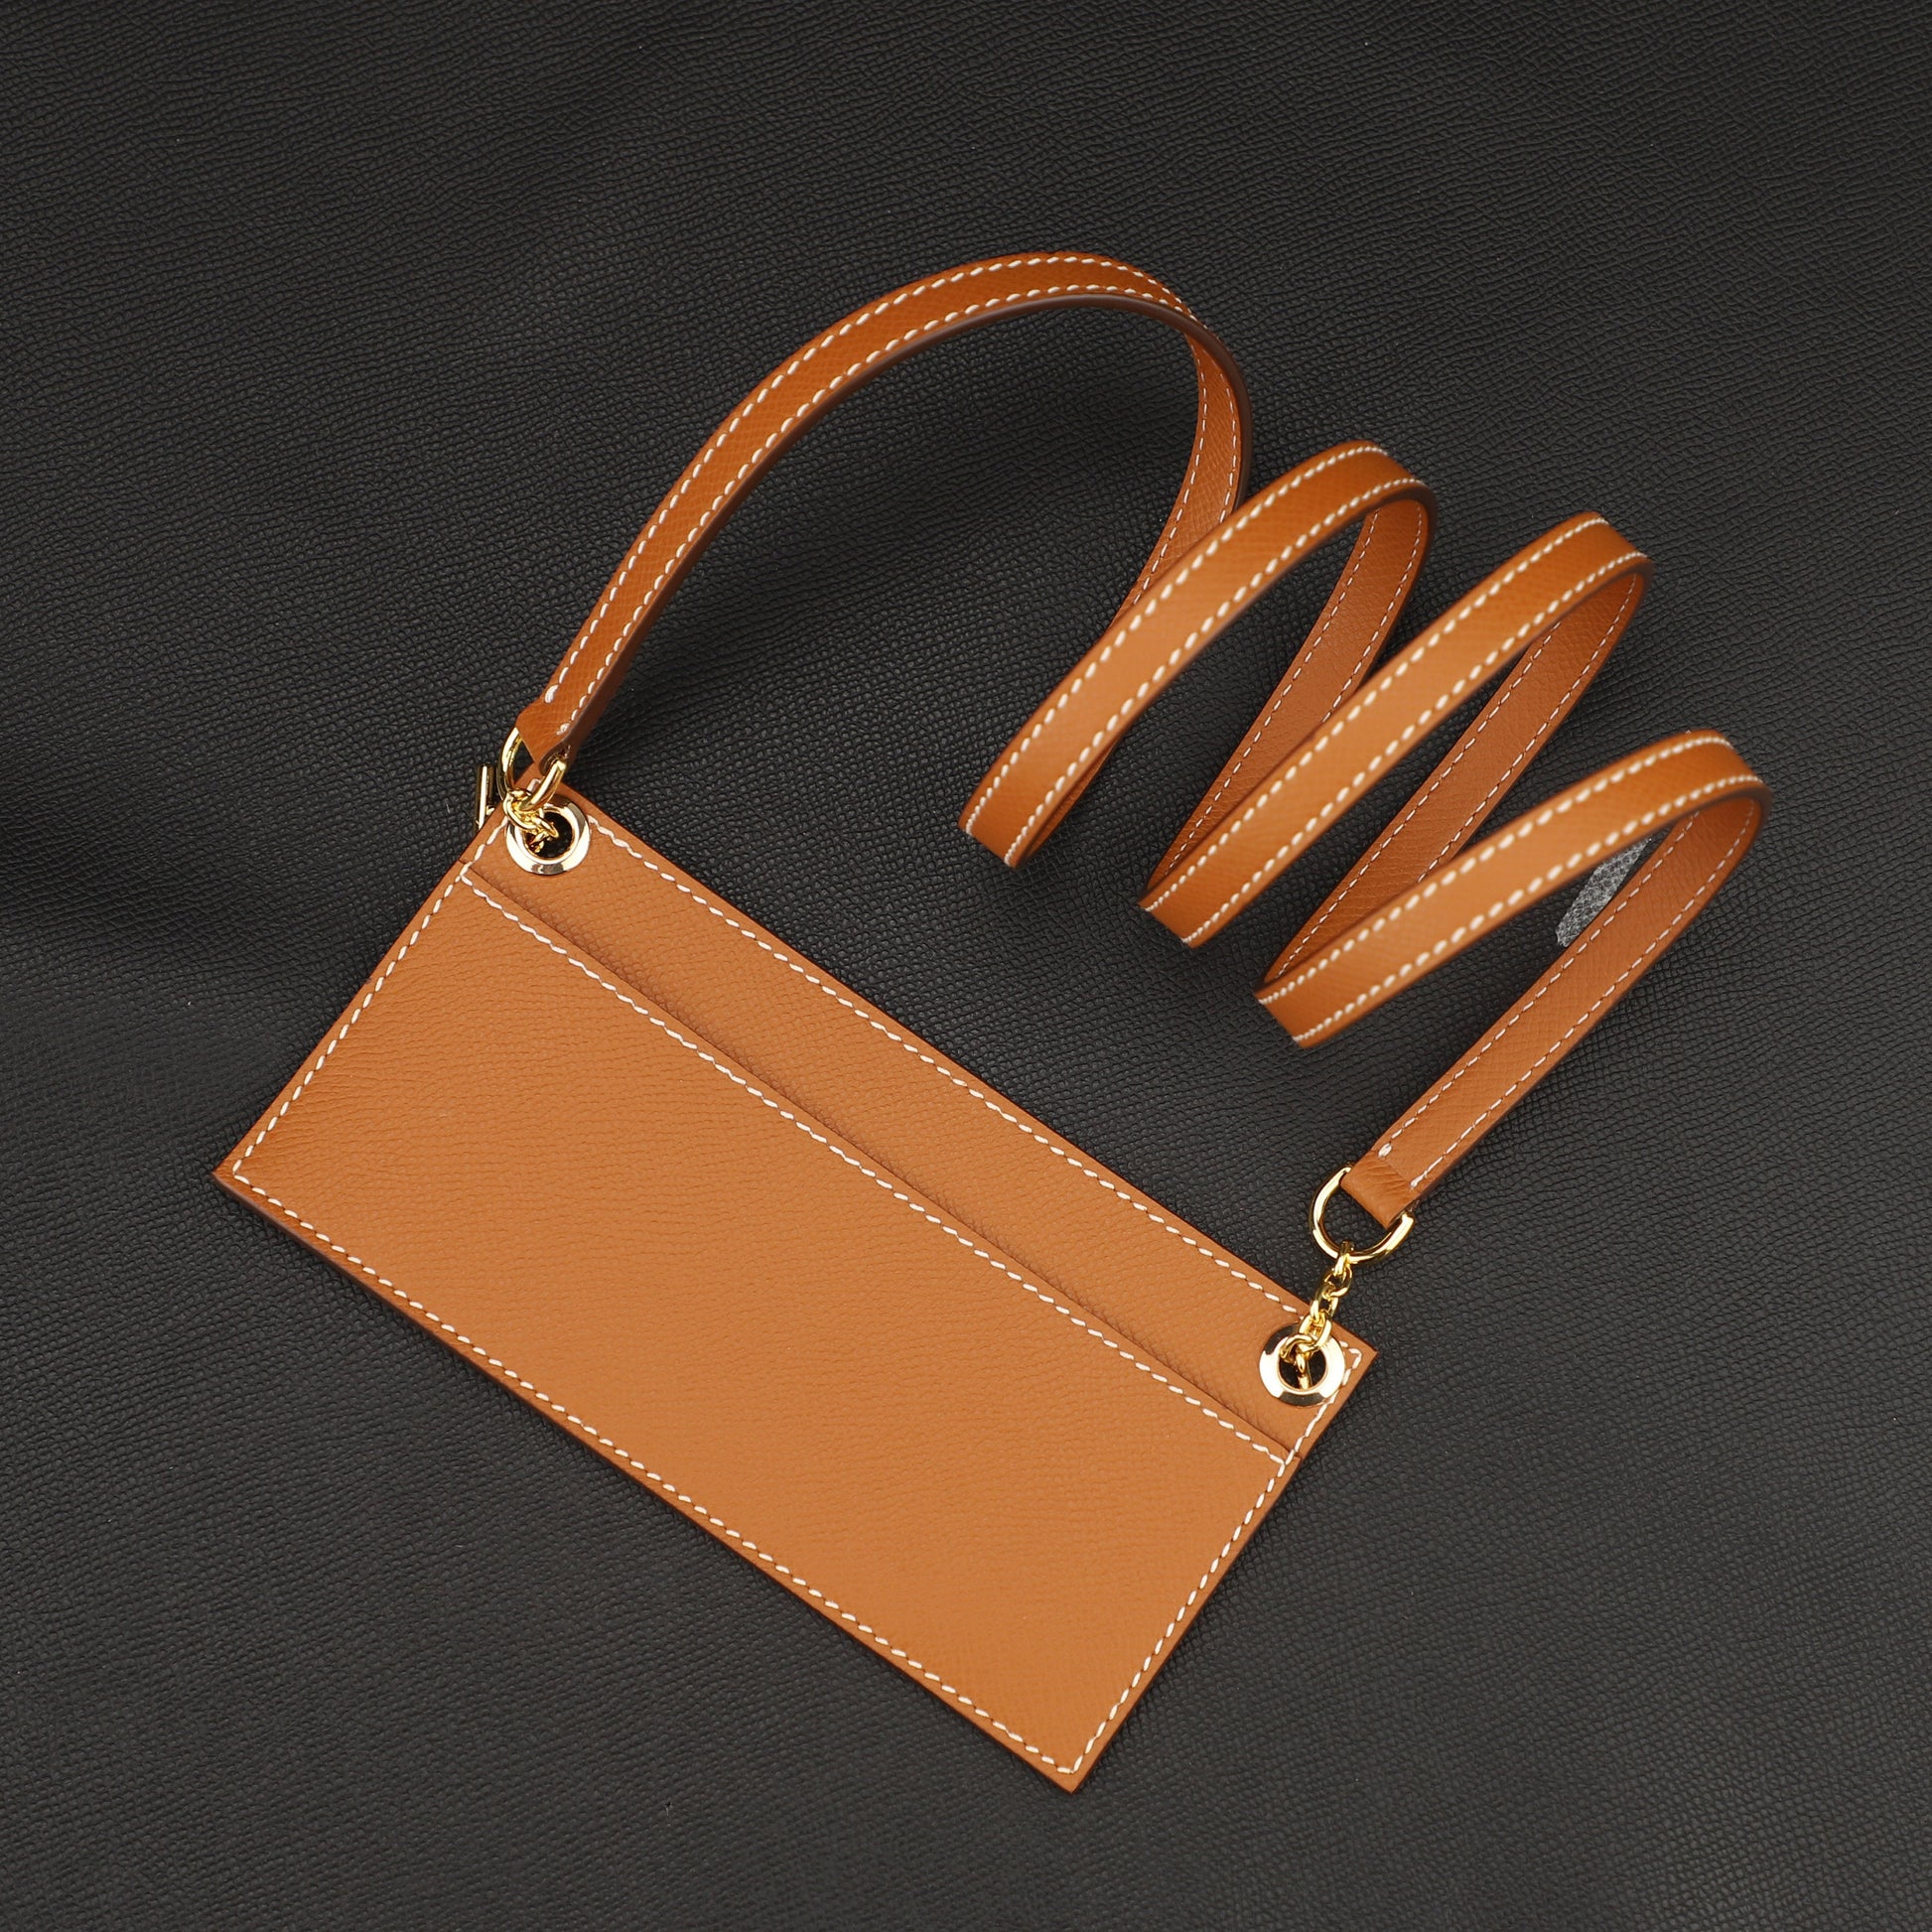 Westcloset - New kelly pocket bag strap